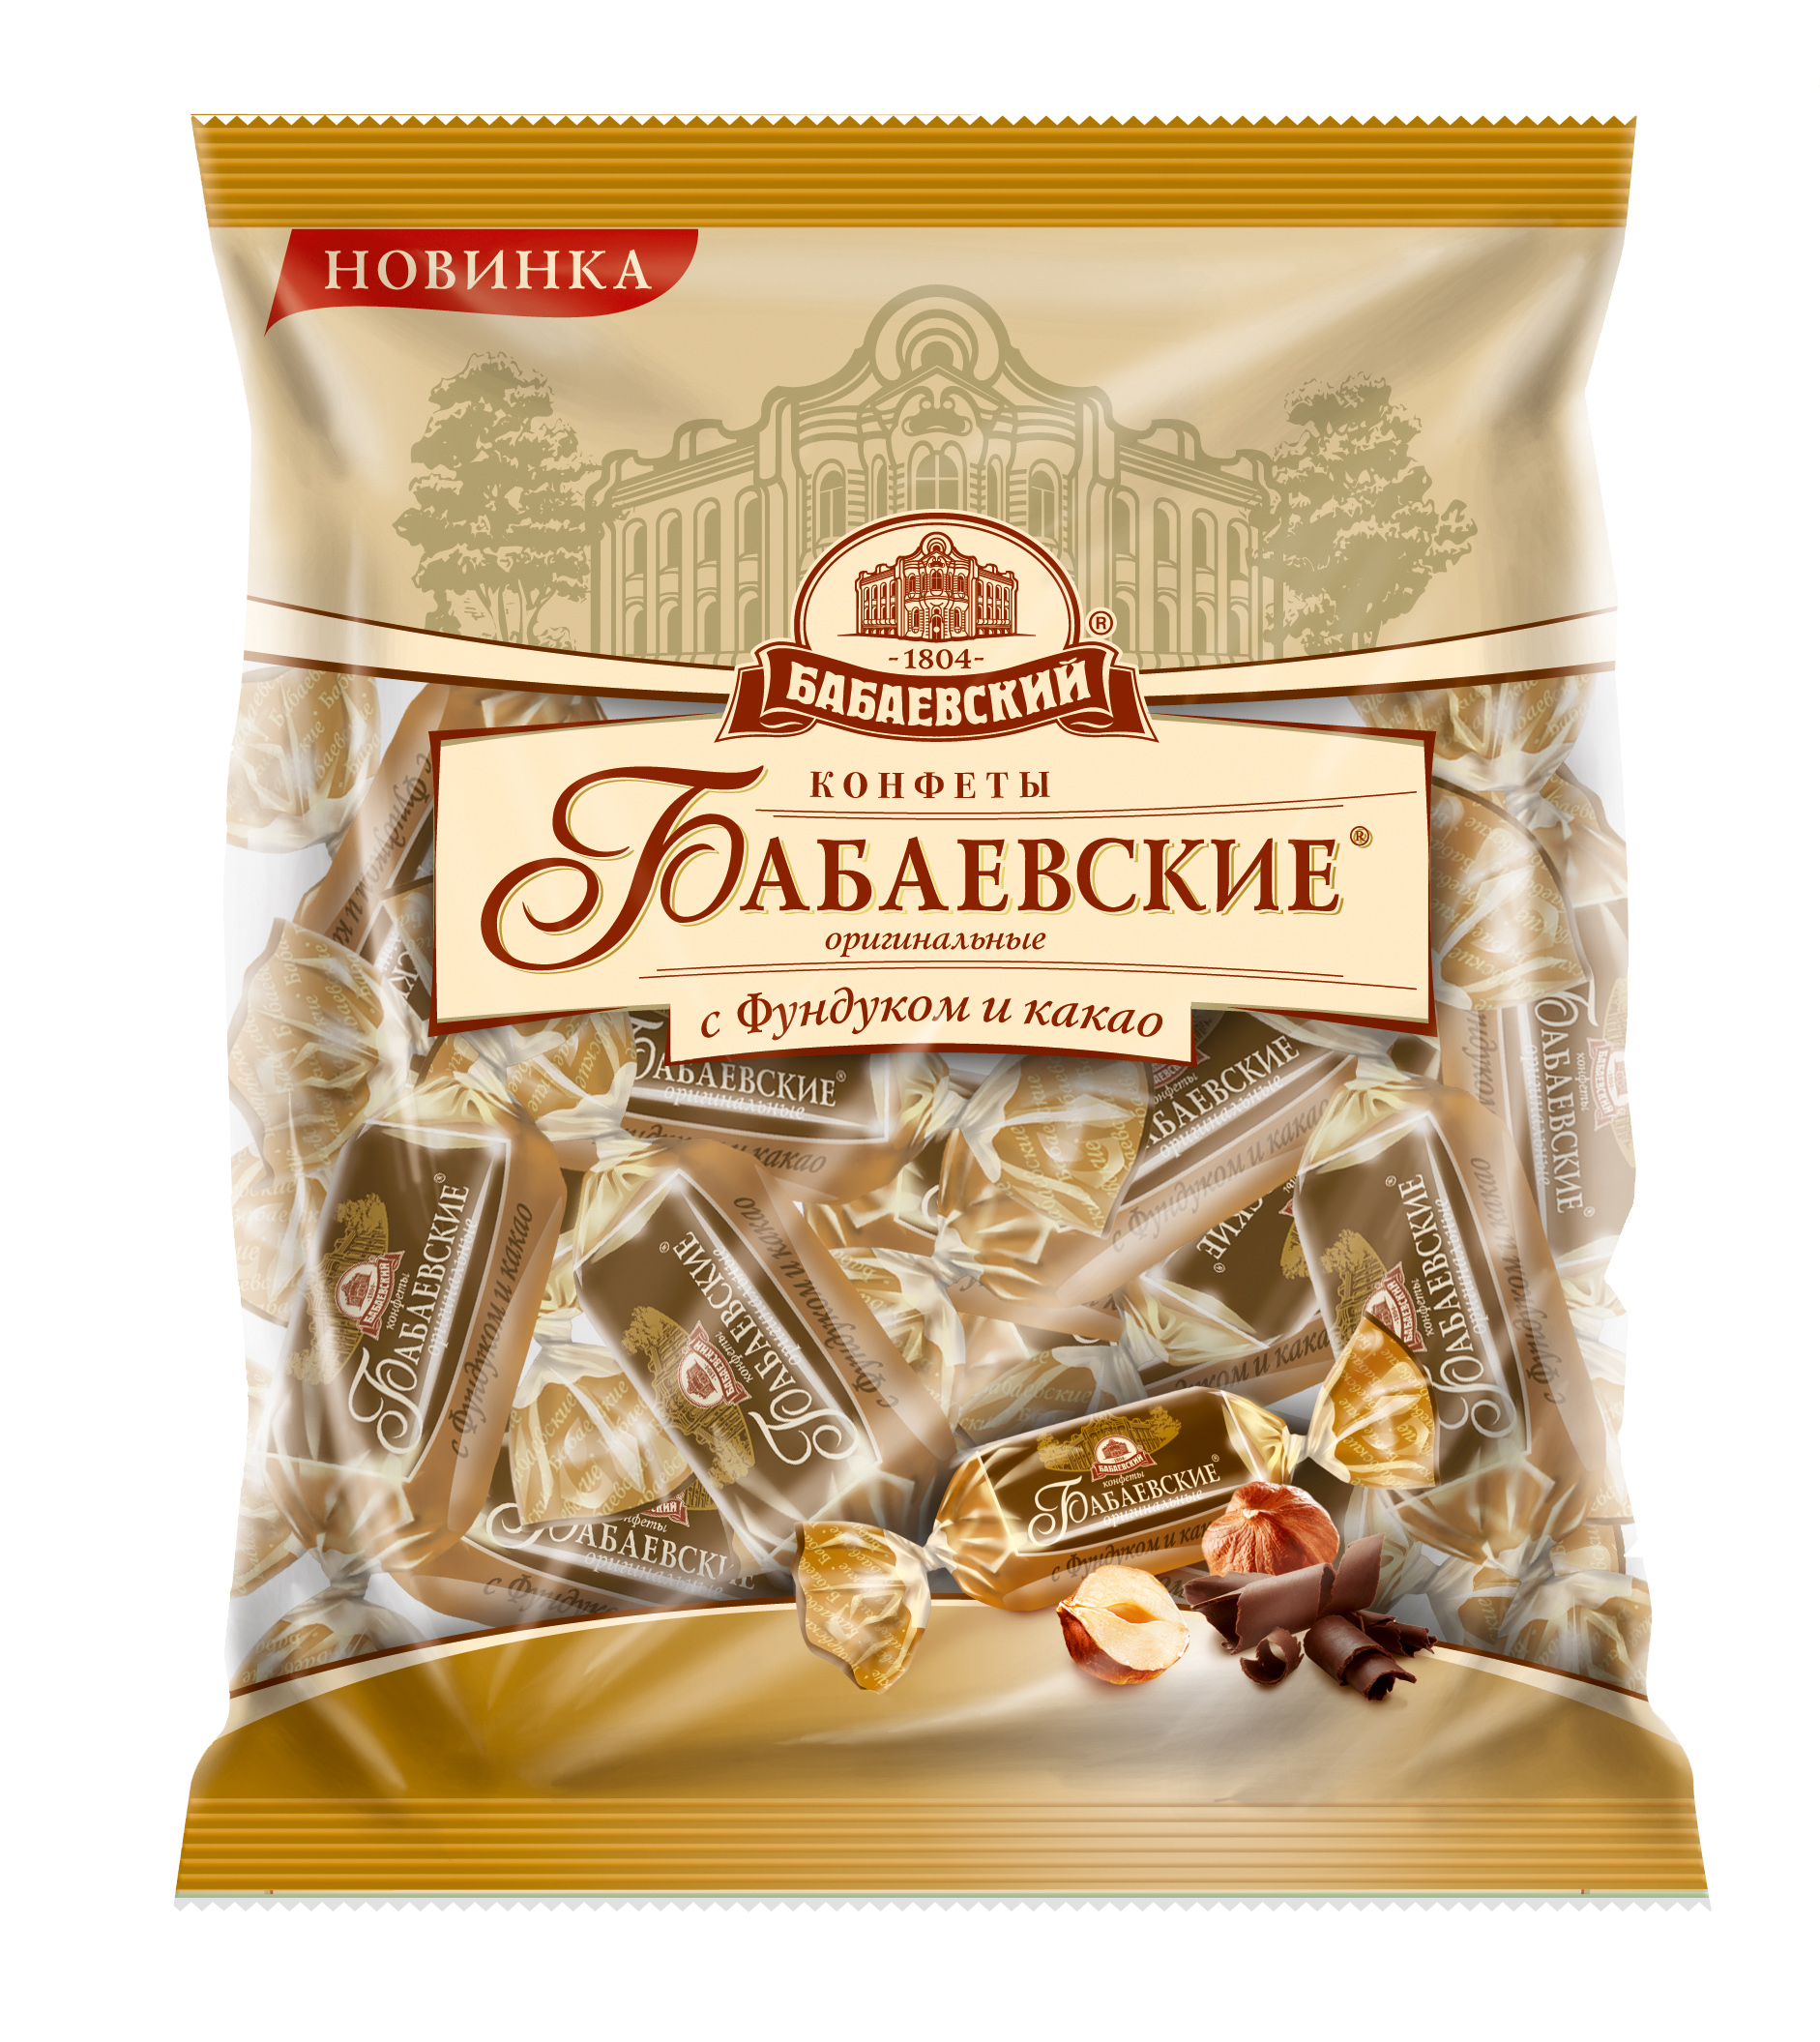 Конфеты Бабаевские оригинальные с фундуком и какао 200 г